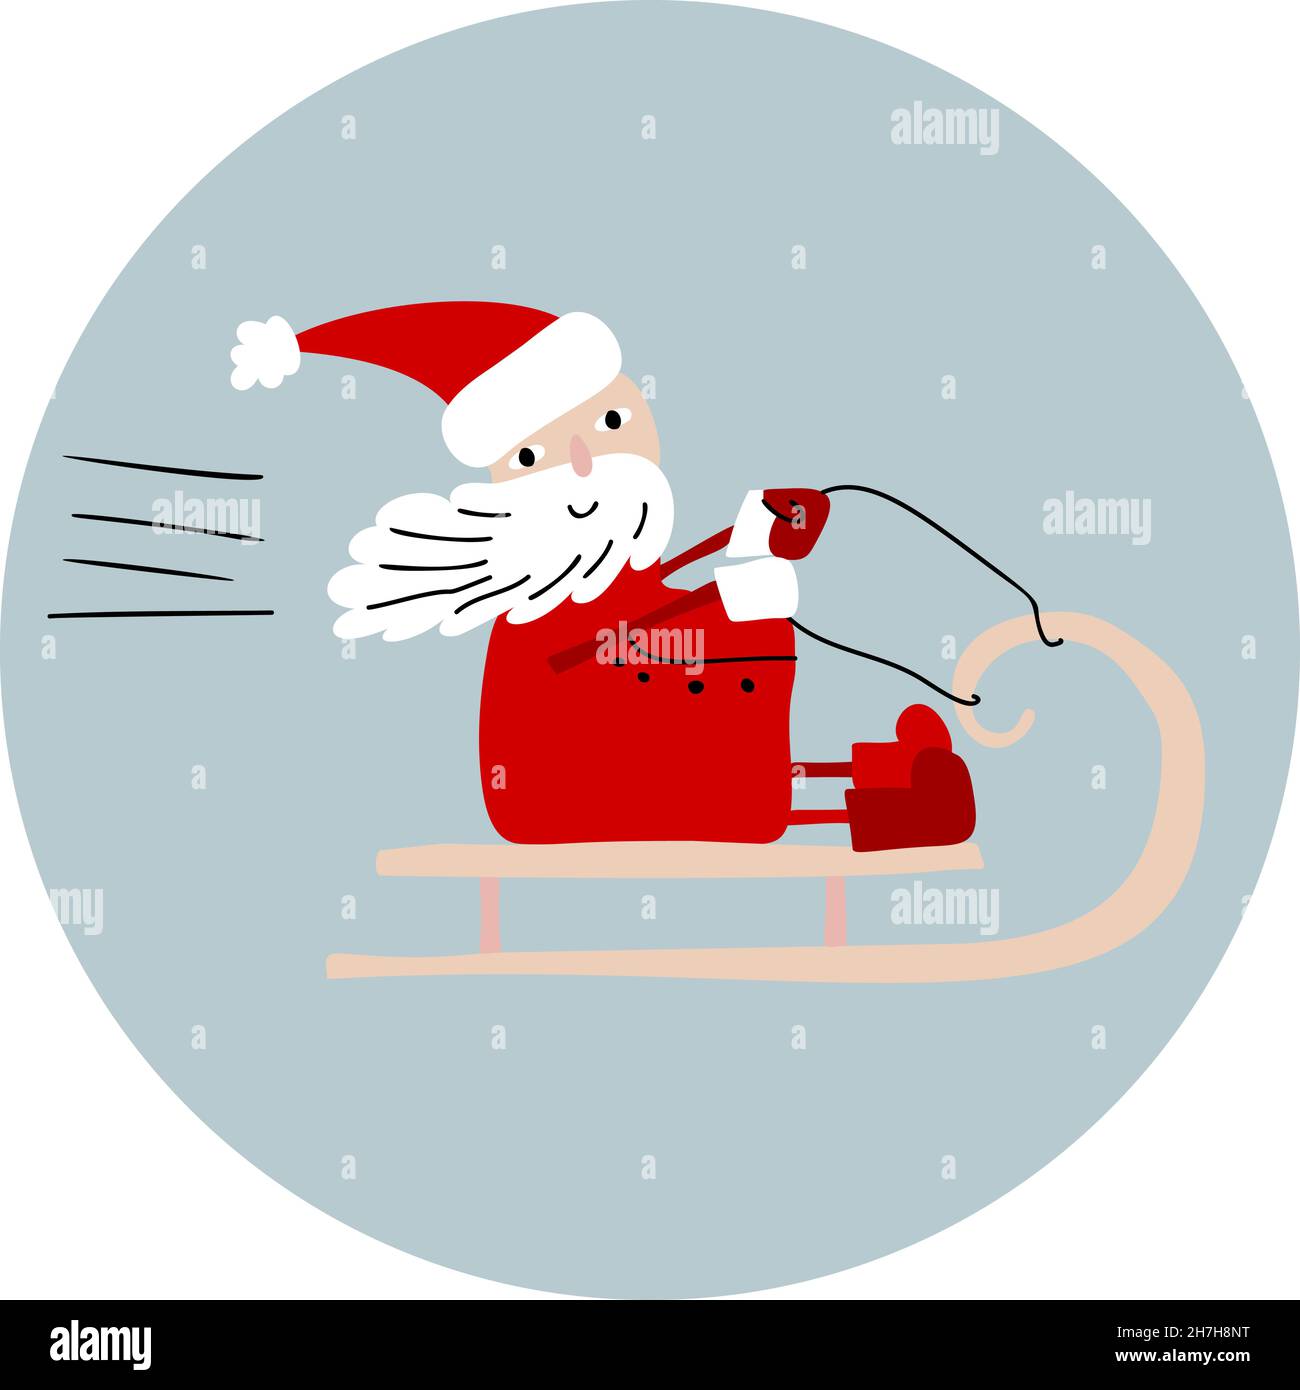 Niedlicher Vektor Santa Claus Reiten in seinem Christmas Sleigh oder Schlitten. Handgezeichnete Doodle skandinavische Baby-Illustration auf blauem runden Hintergrund Stock Vektor